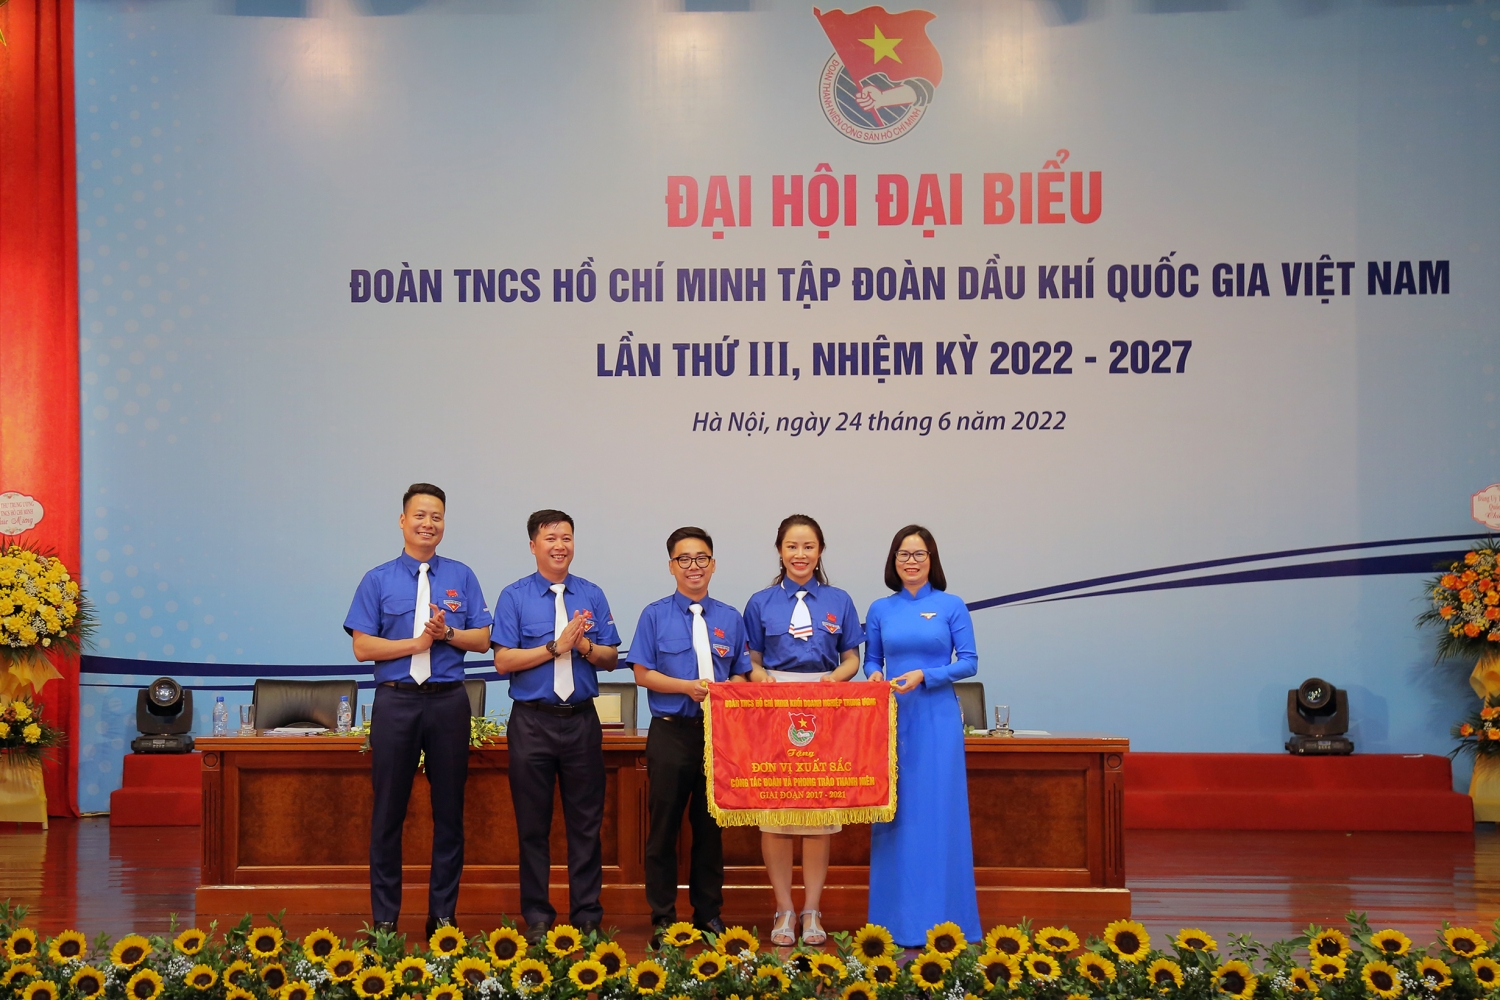 Tổ chức thành công Đại hội đại biểu Đoàn Thanh niên Tập đoàn lần thứ III, nhiệm kỳ 2022-2027